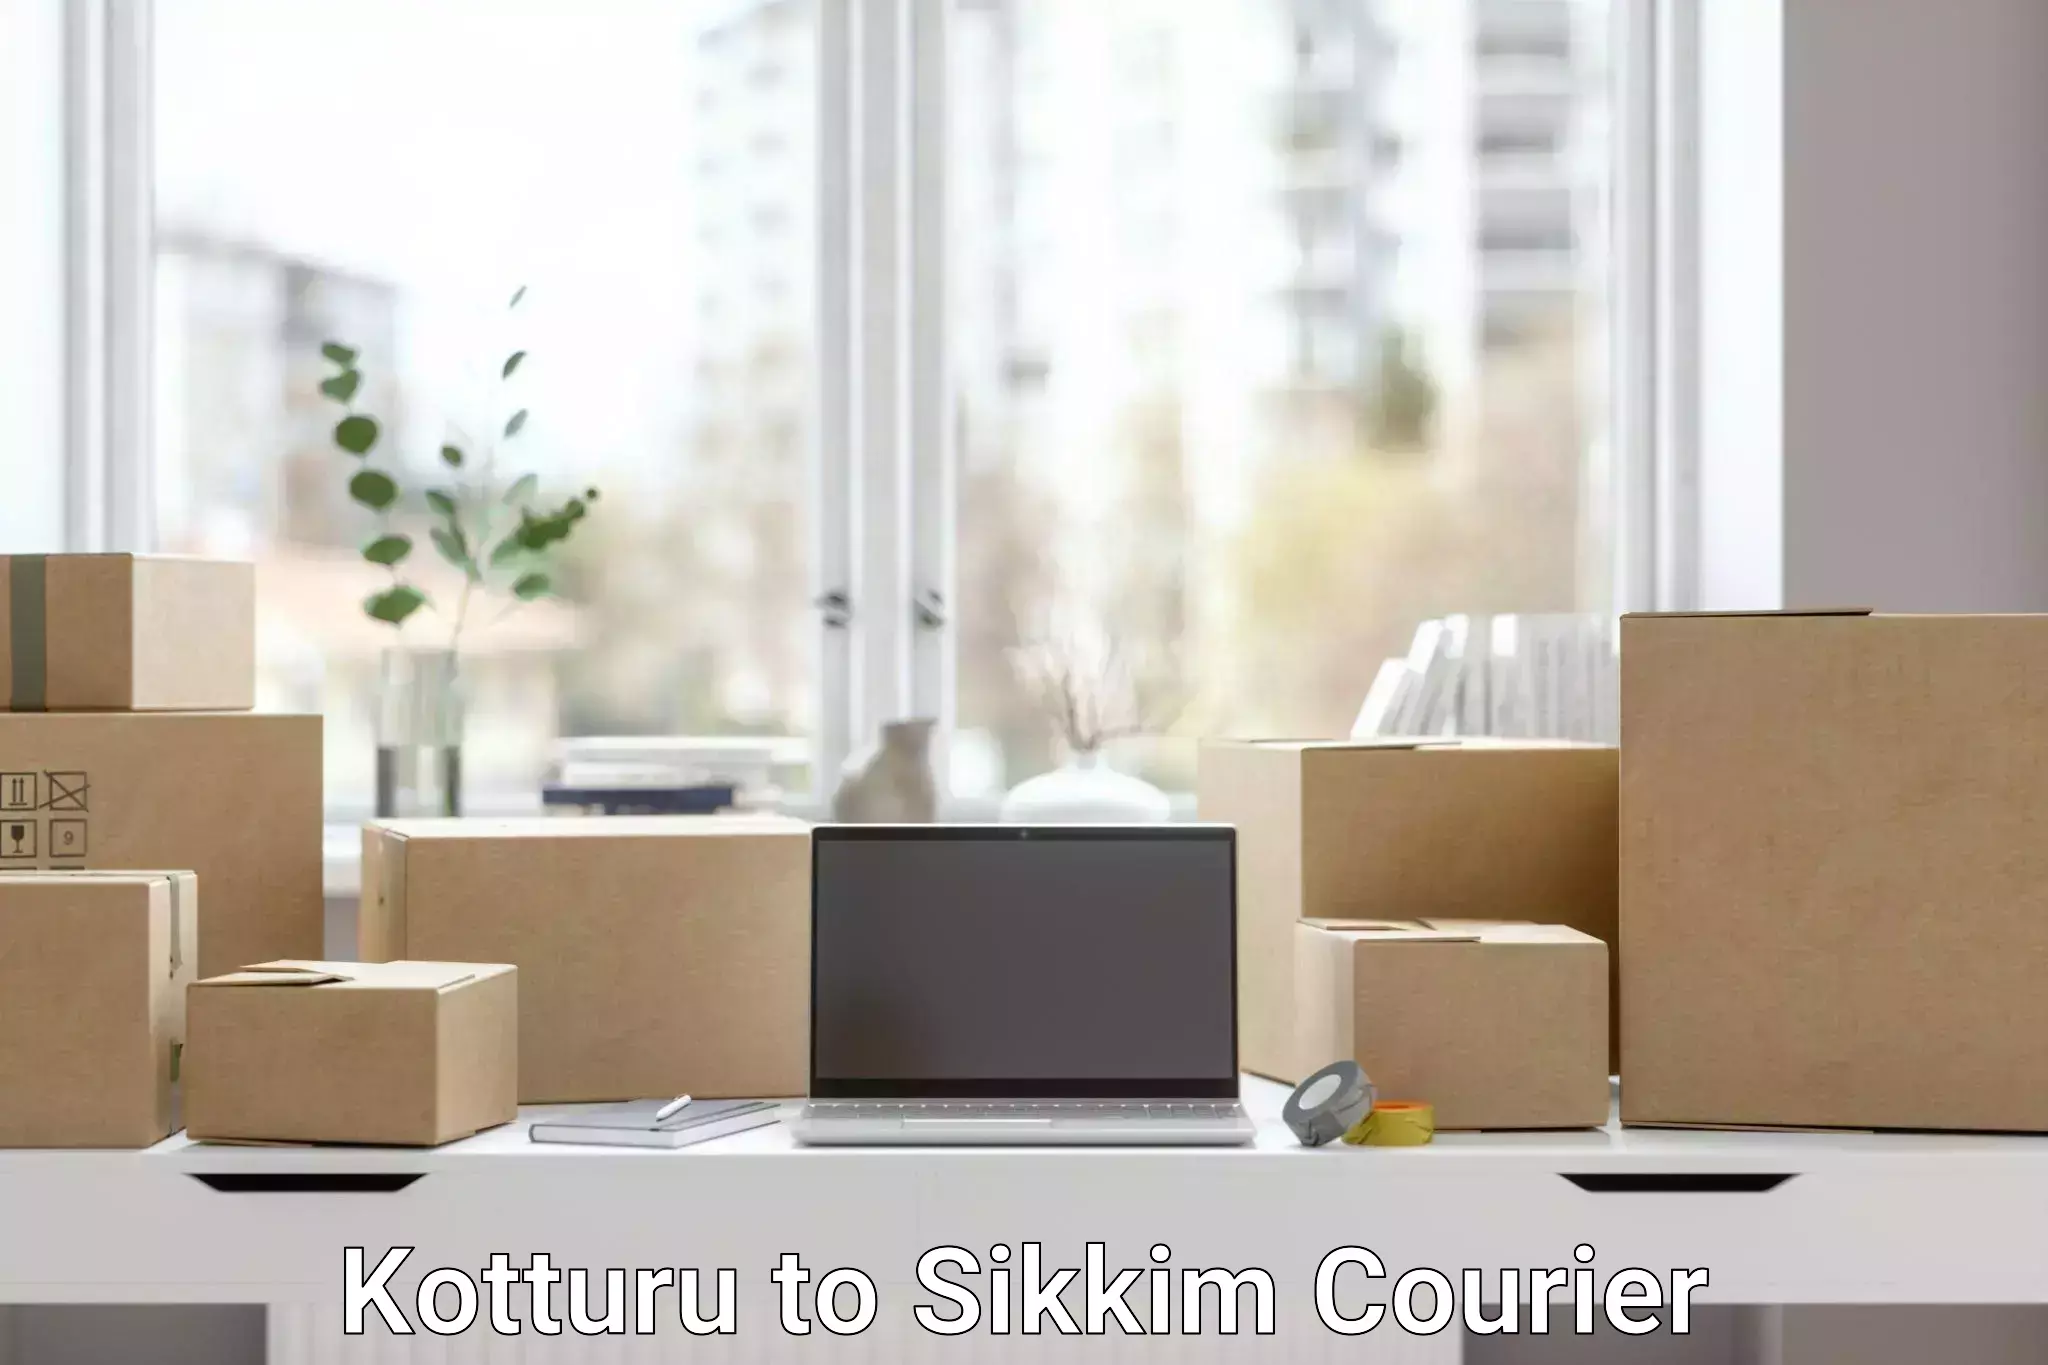 Customer-oriented courier services Kotturu to Sikkim